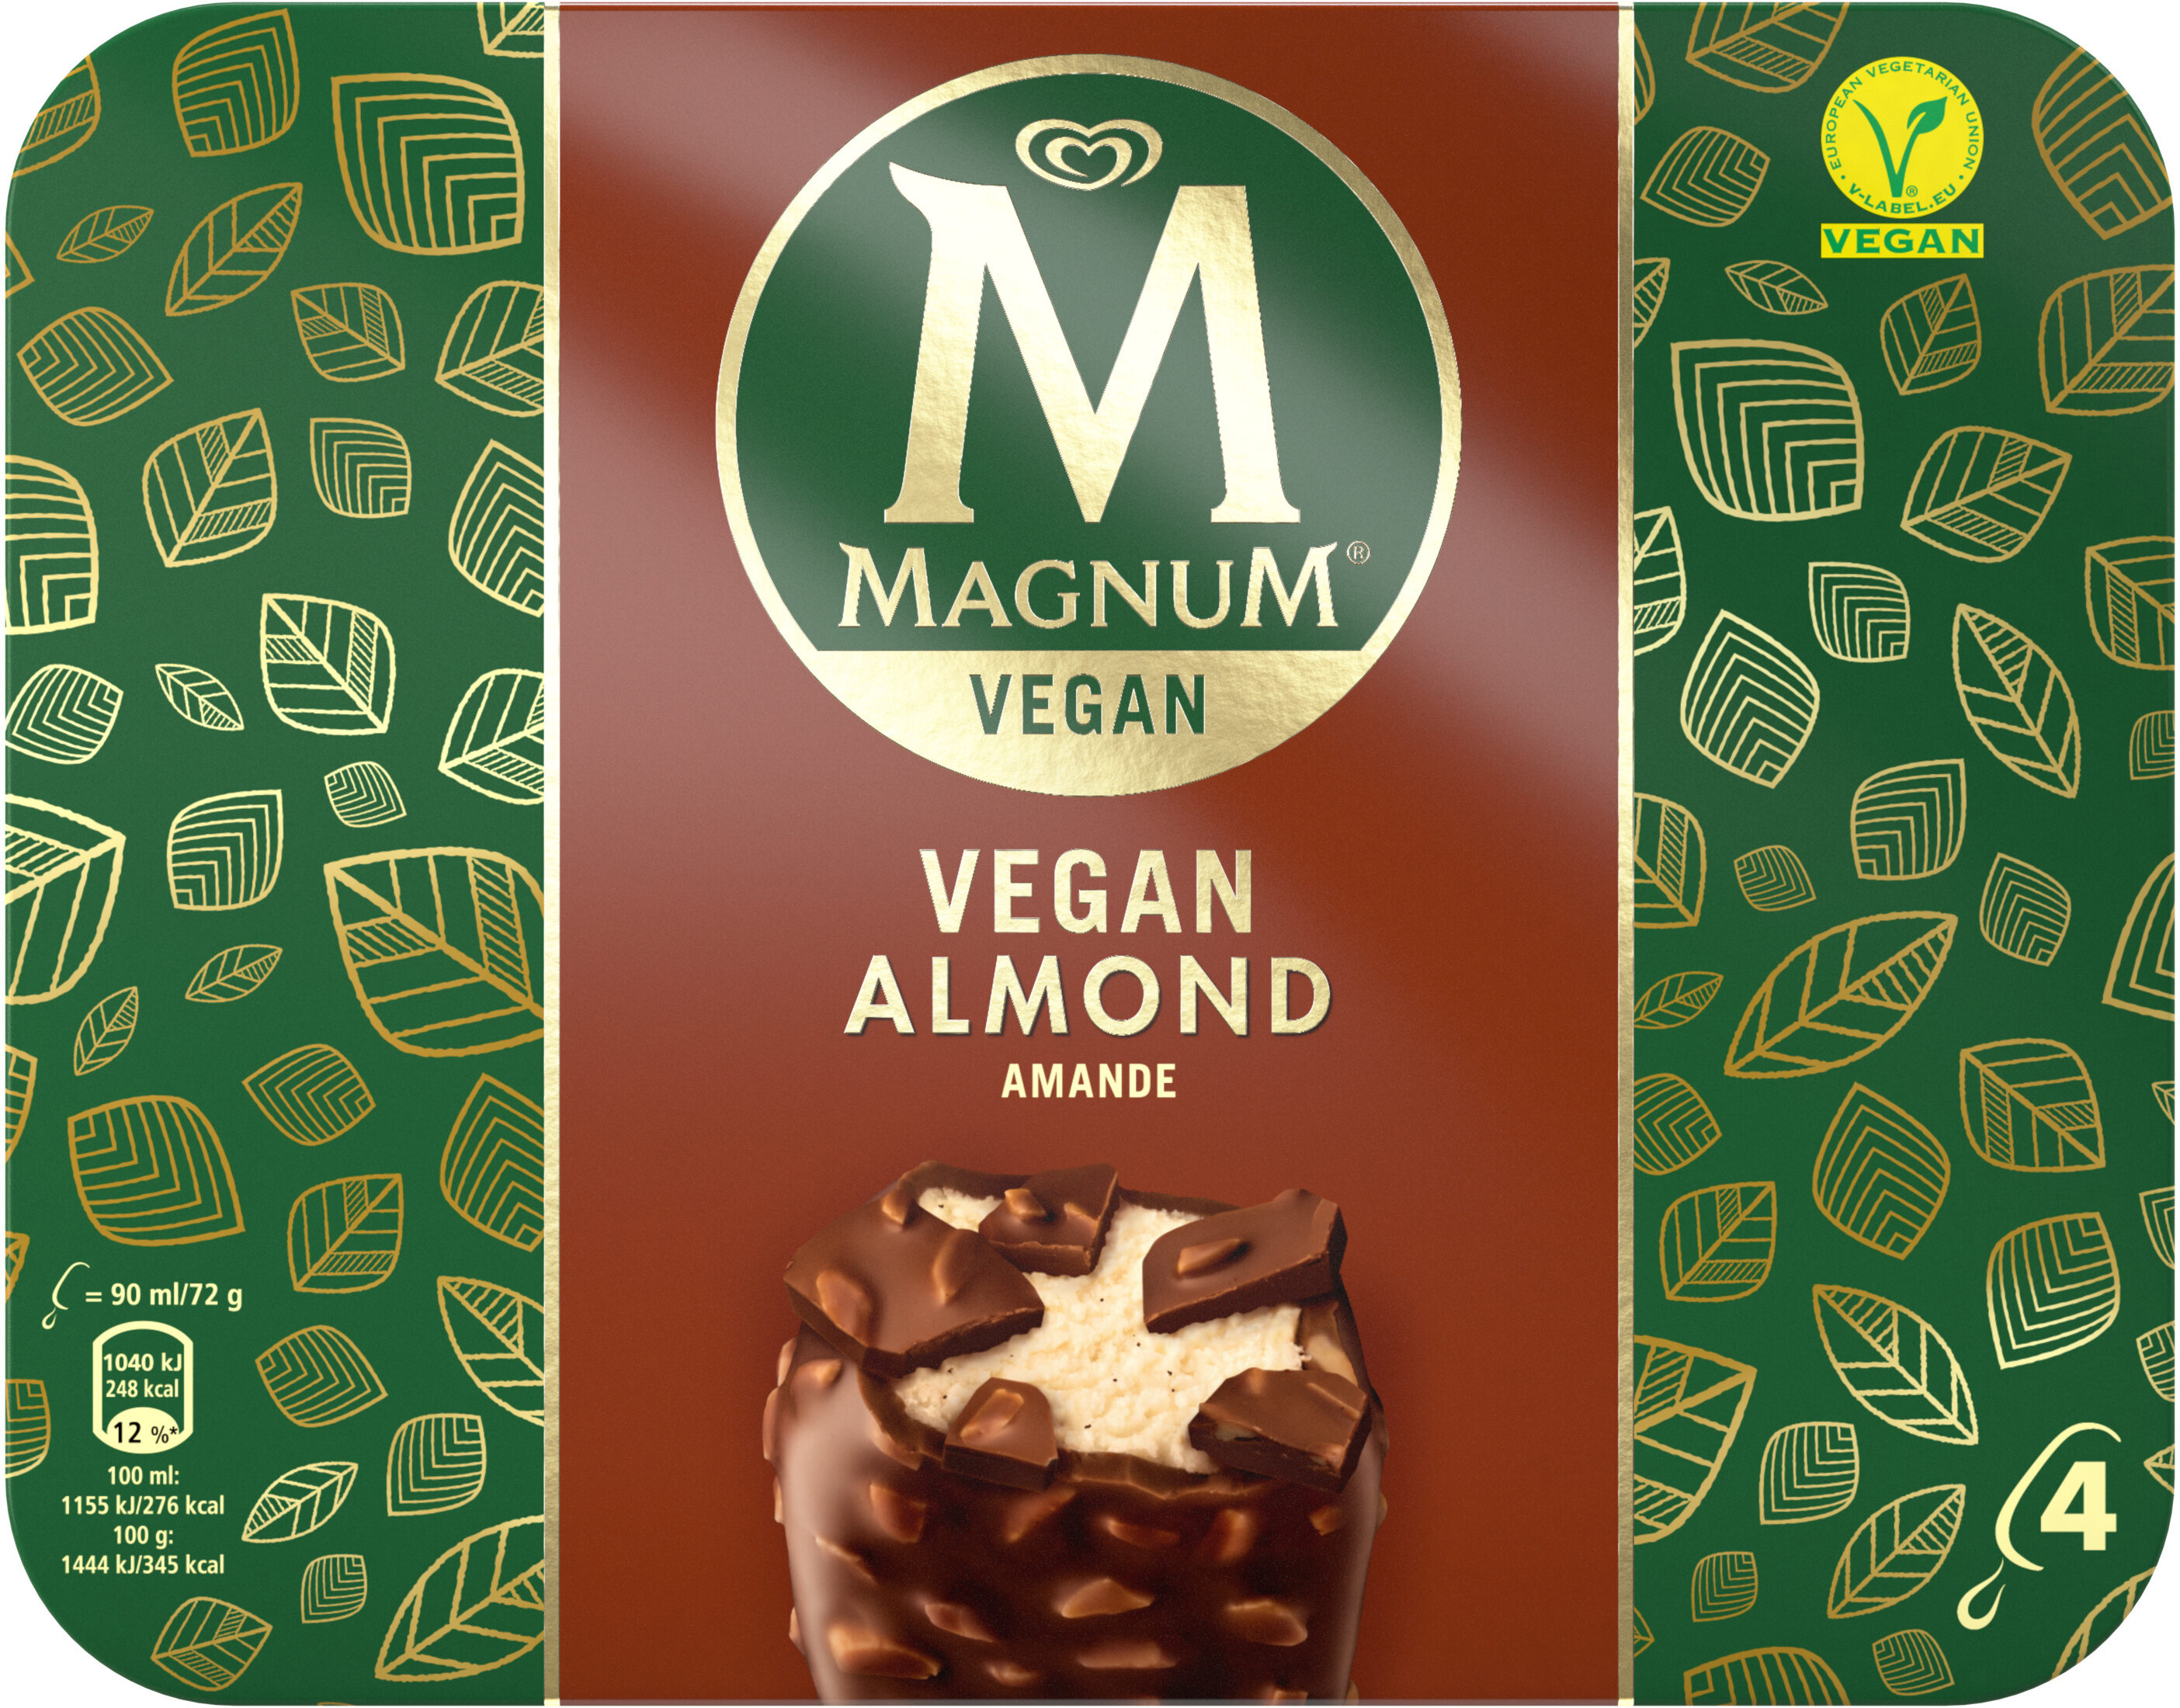 Magnum Vegan Almond - Produit